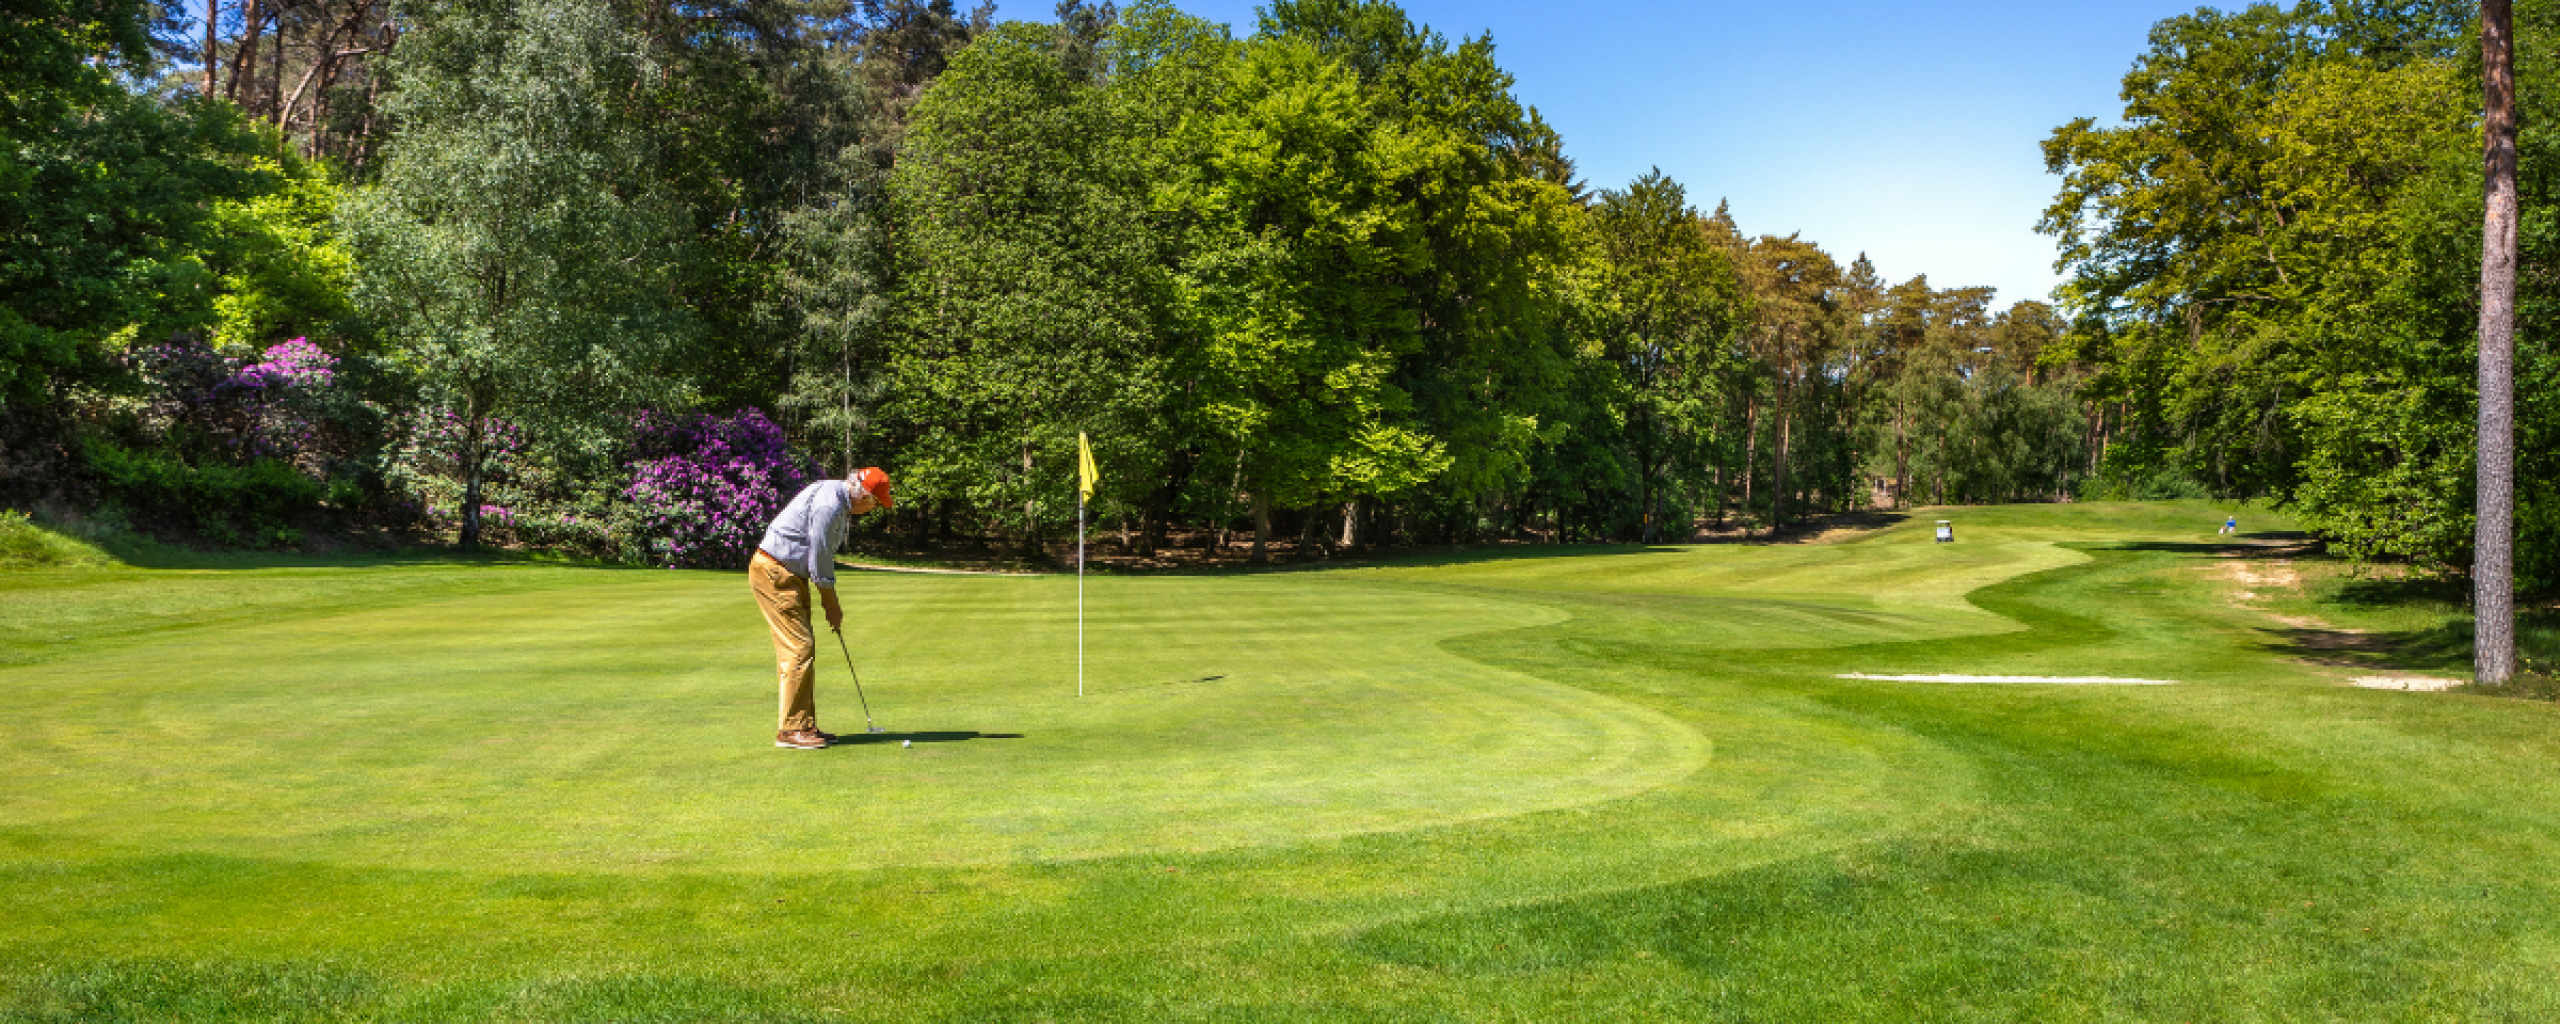 Een groene golfbaan, groene bomen en paarse struiken en iemand die een bal slaat op de golfbaan. De zon schijnt en de lucht is blauw.